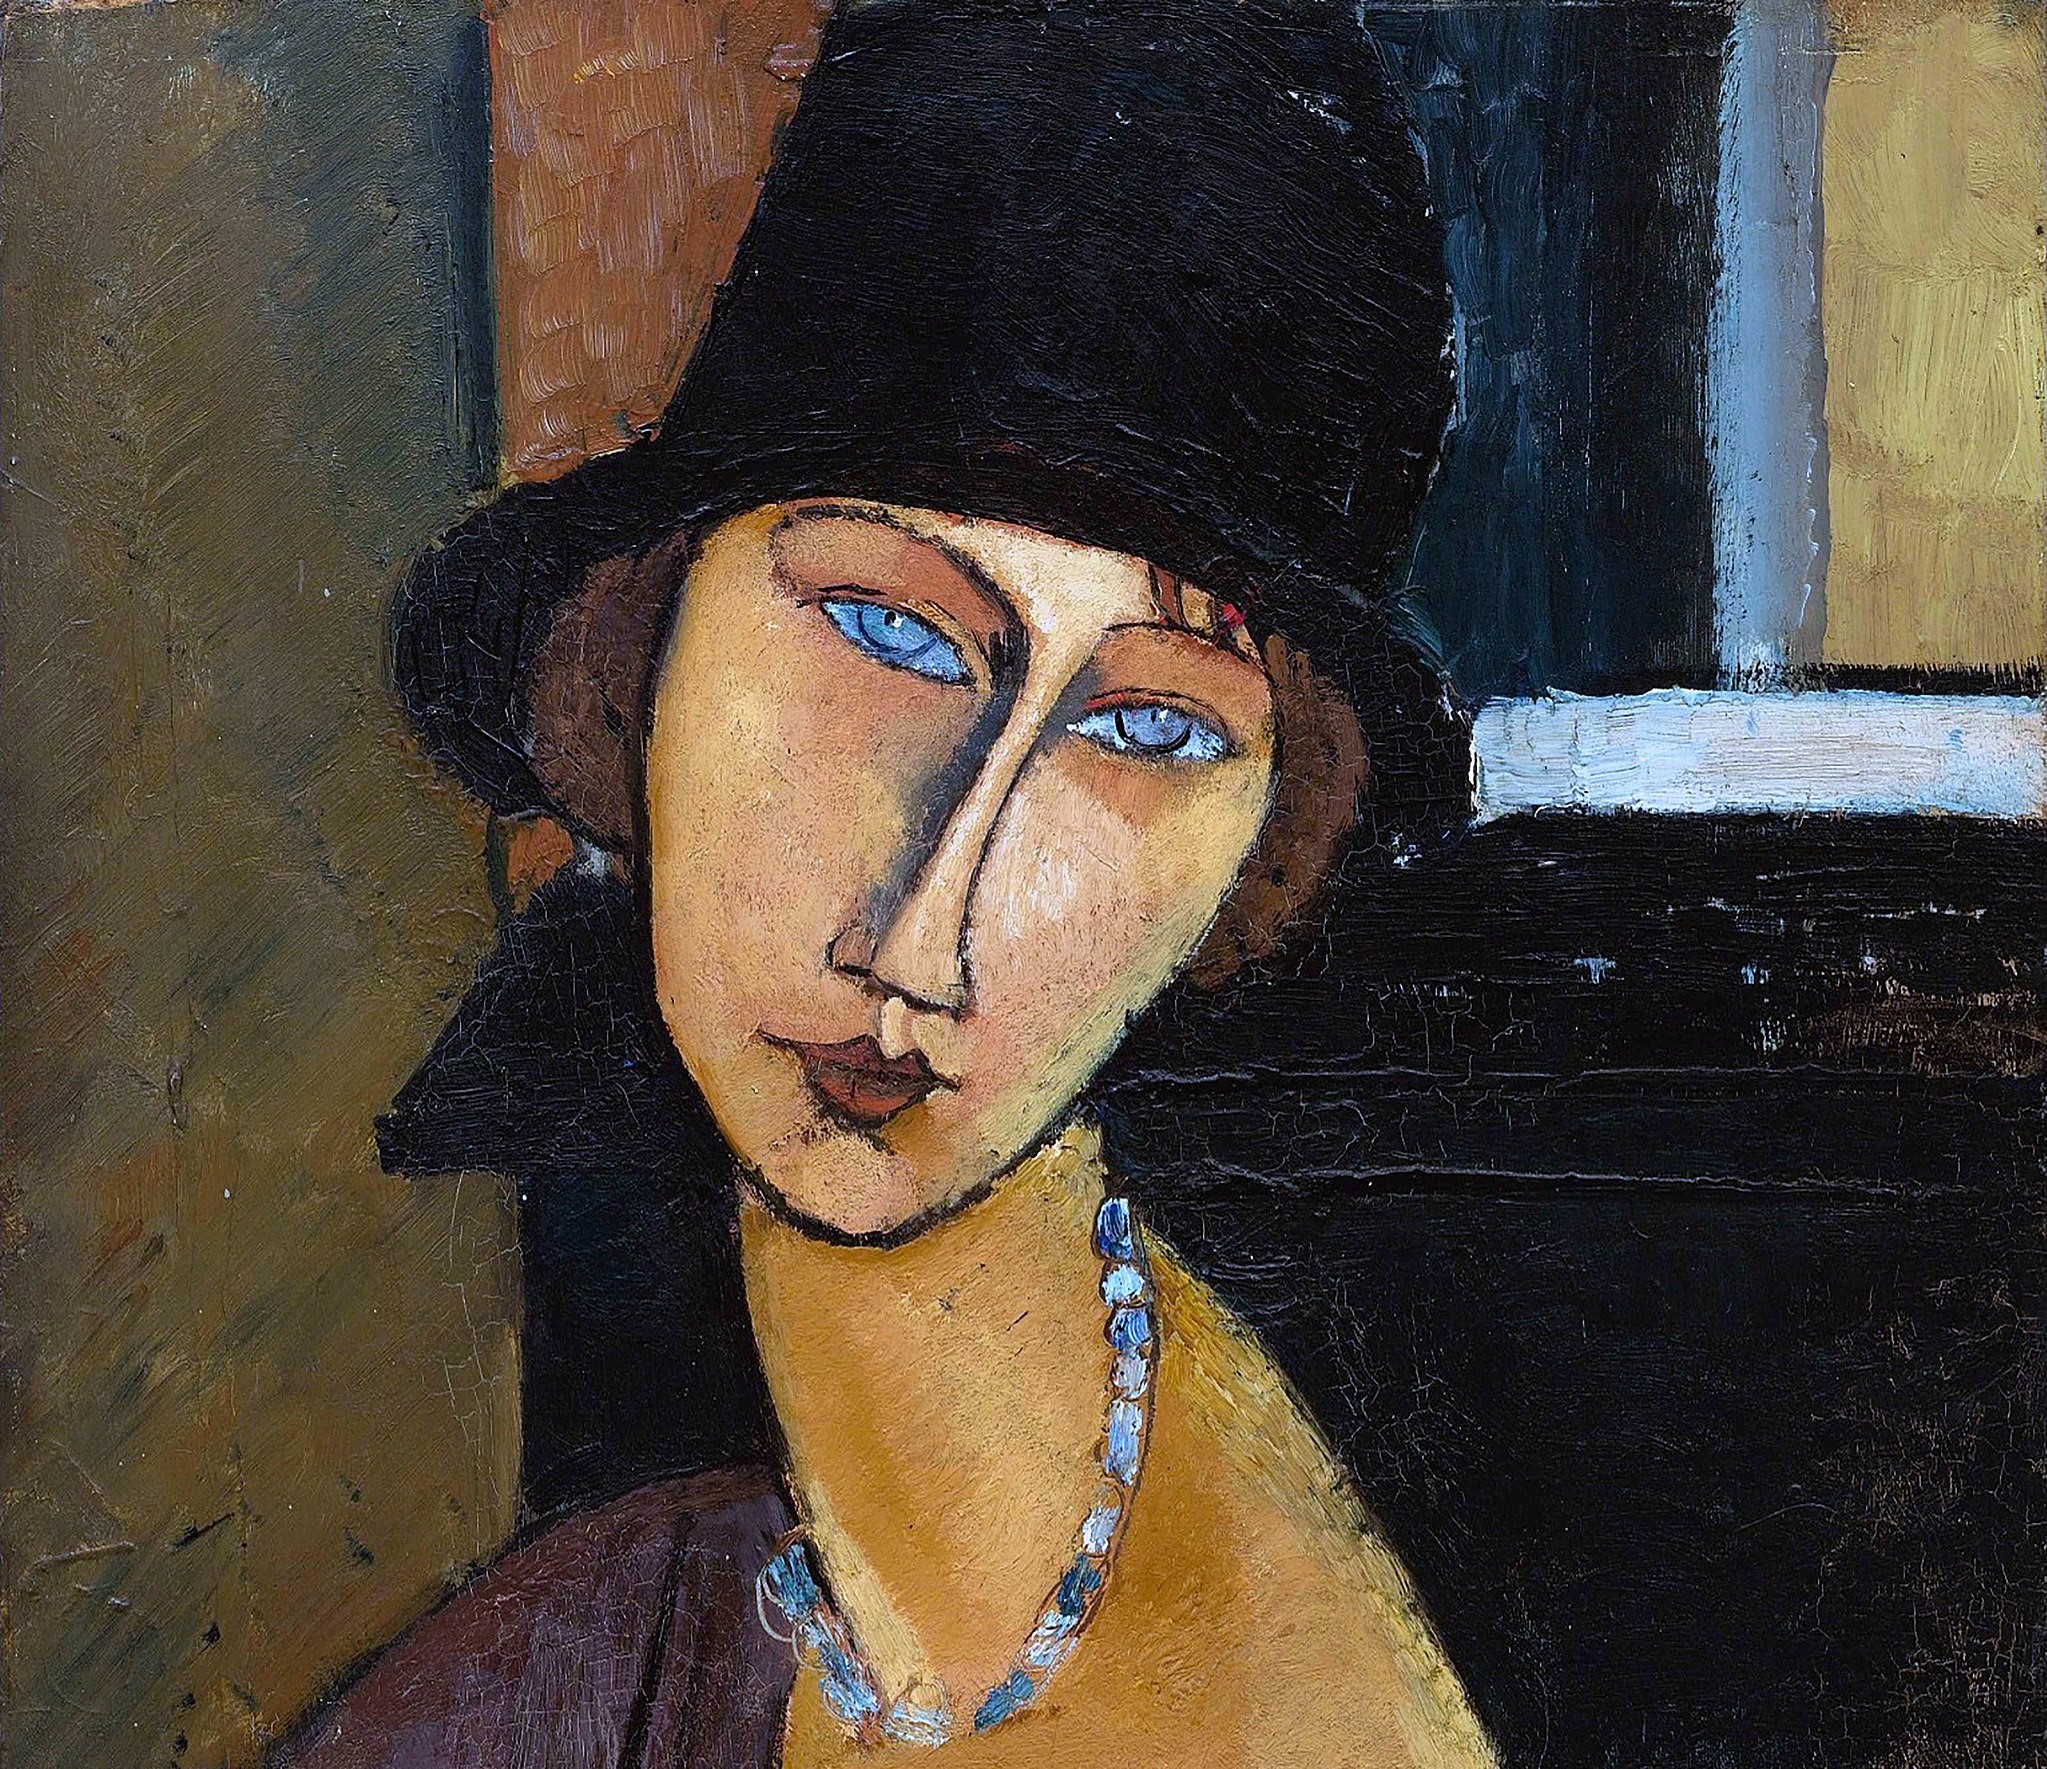 Retrato de Jeanne Hébuterne, pintado por Modigliani en 1919. Foto: Amedeo Modigliani/CC0 via Wikimedia Commons.